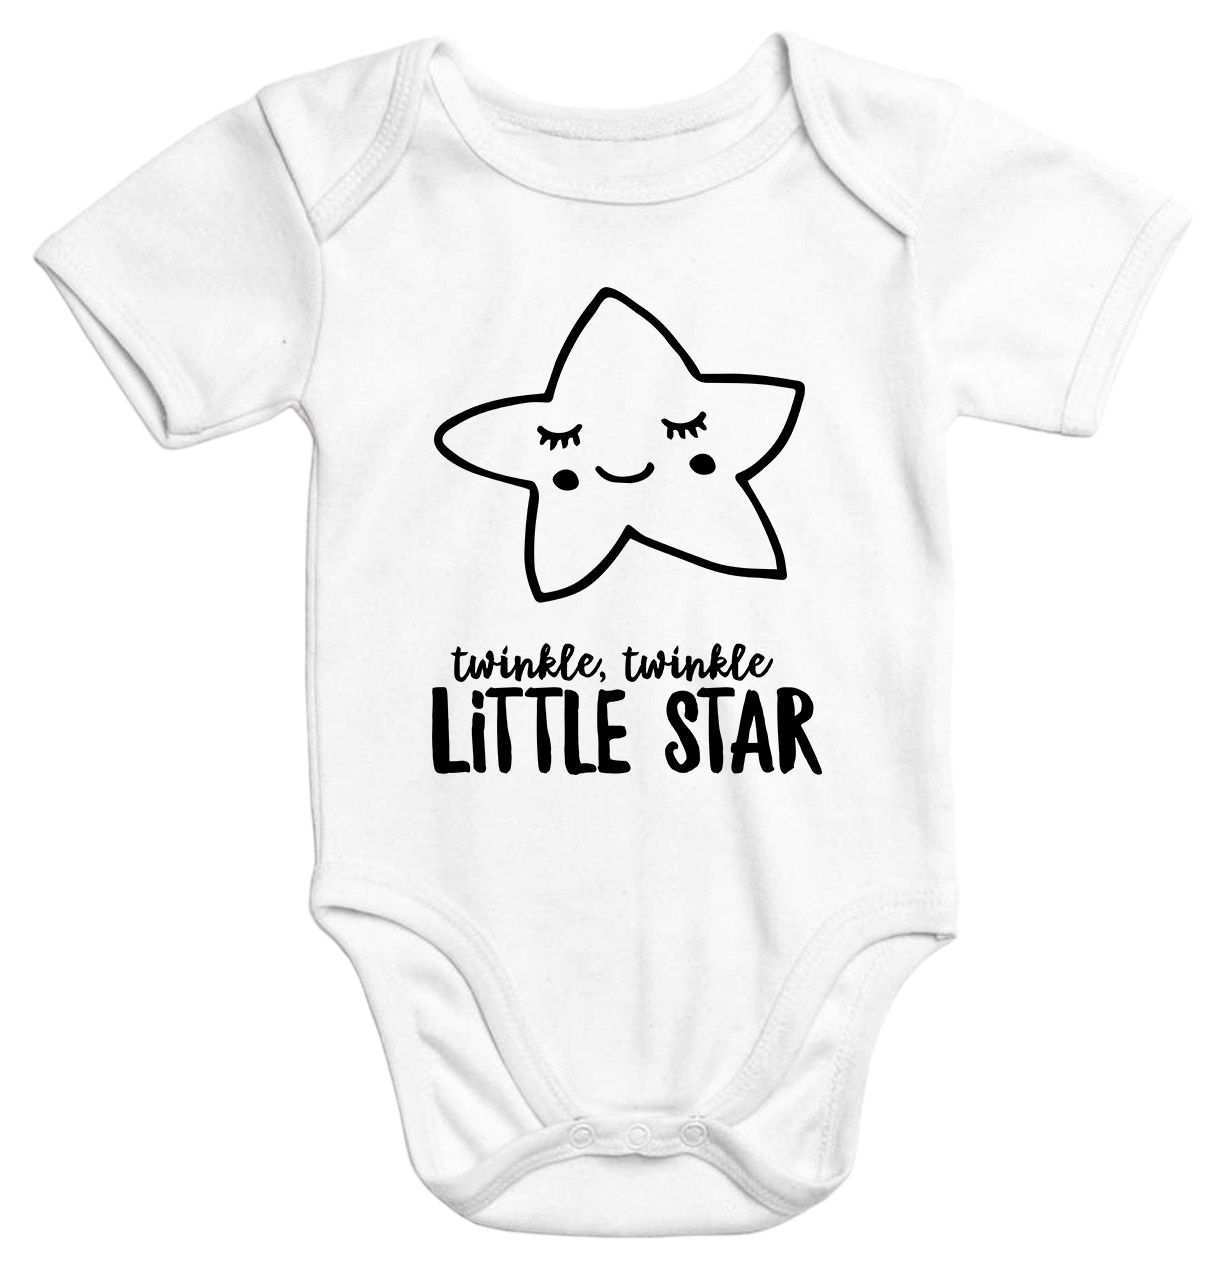 Baby Body Mit Stern Aufdruck Twinkle Twinkle Little Star Bio Baumwolle Kurzarm Moonworks Baby Body Spruche Baby Klamotten Madchen Babybody